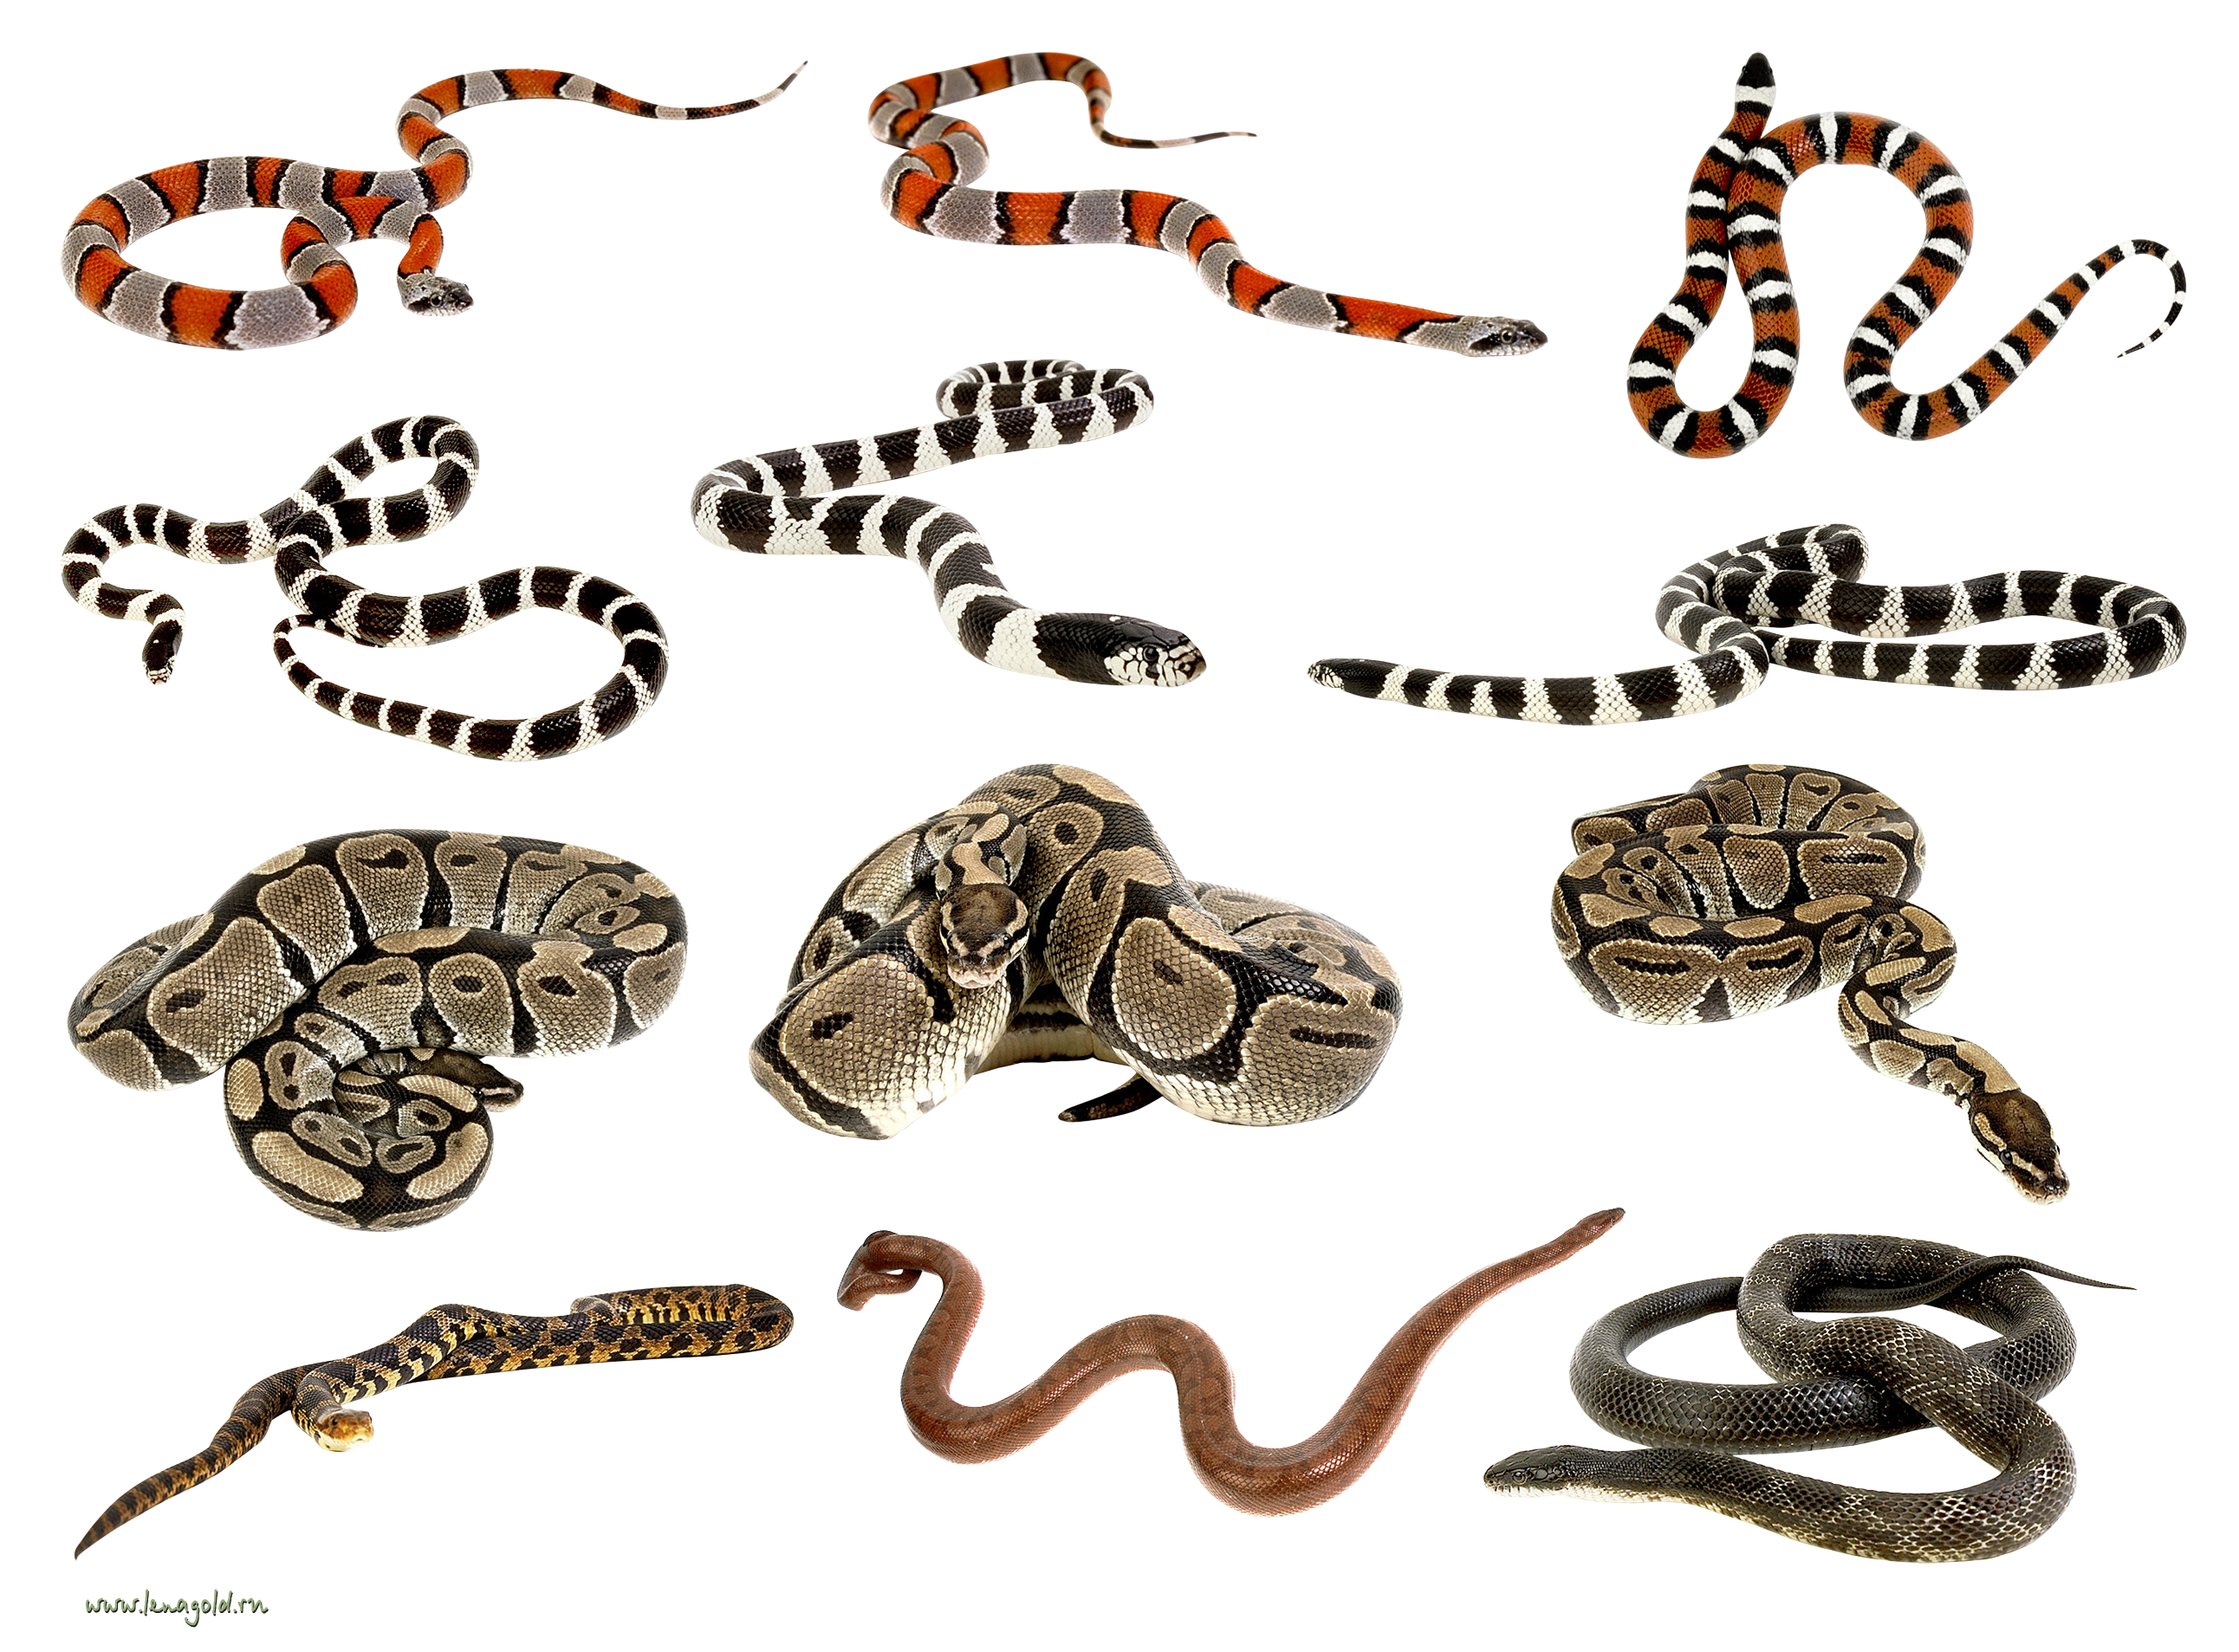 Várias cobras juntas